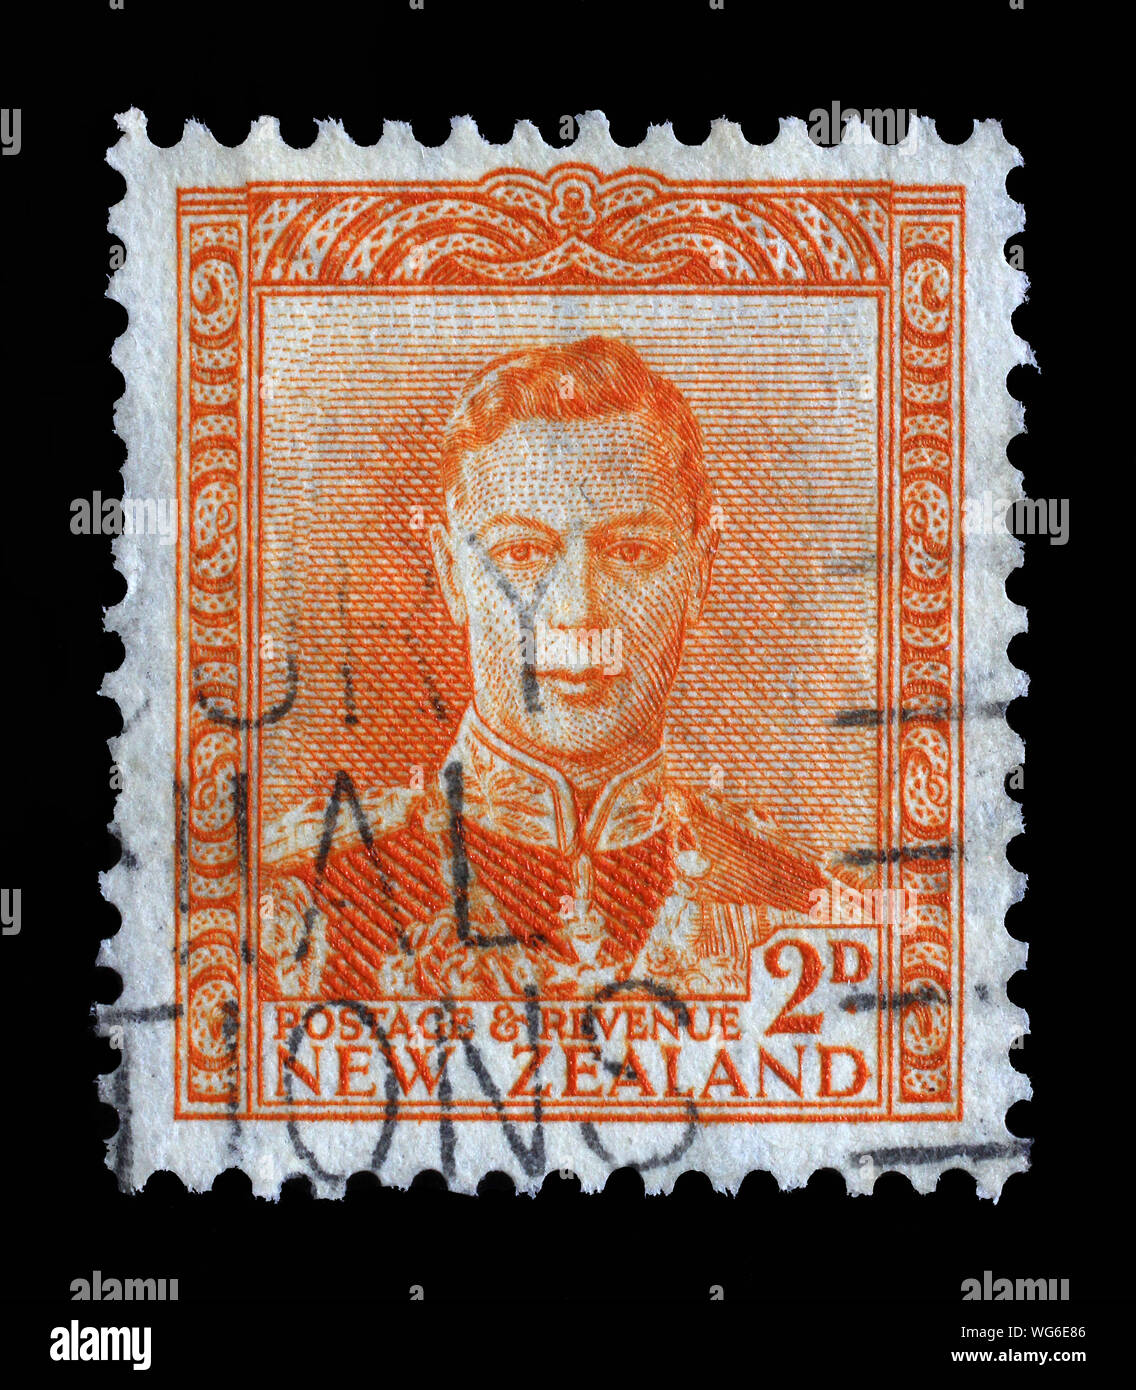 Timbre émis en Nouvelle-Zélande montre le roi George VI, vers 1947. Banque D'Images